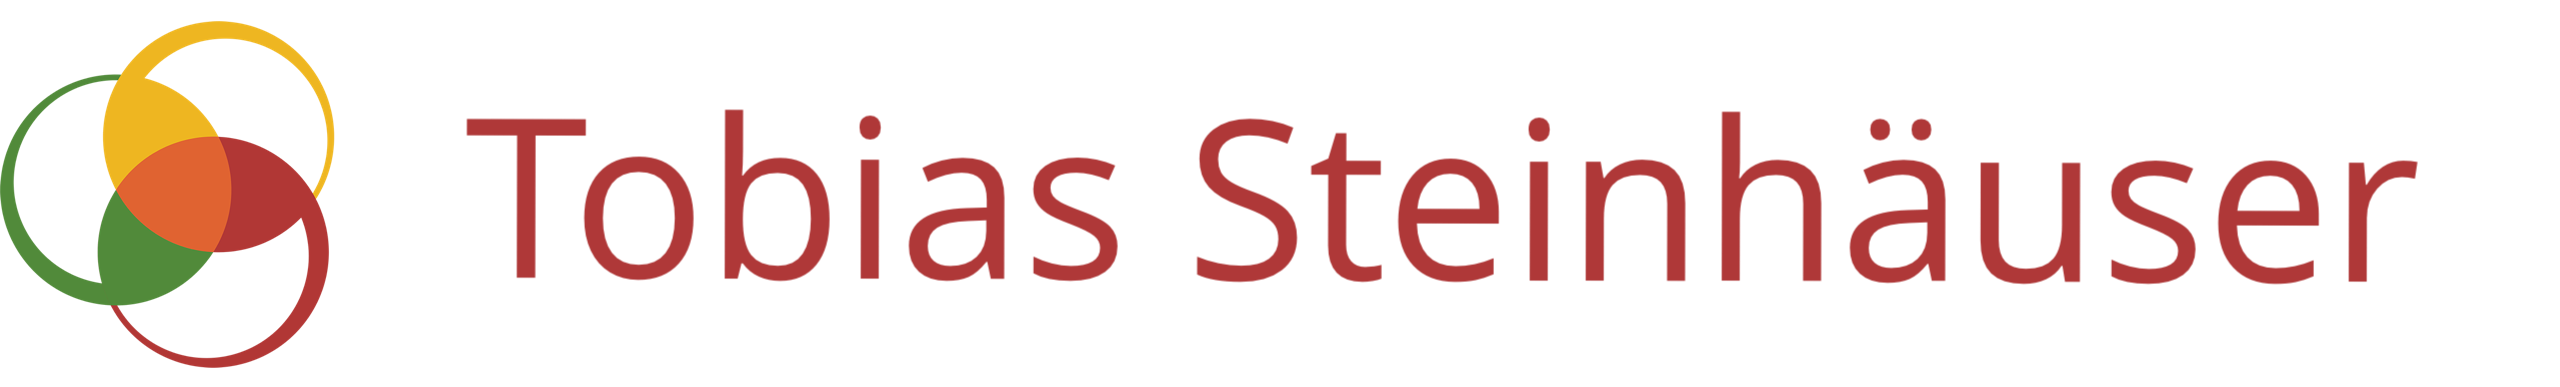 Tobias Steinhaeuser - Logo mit Schrift